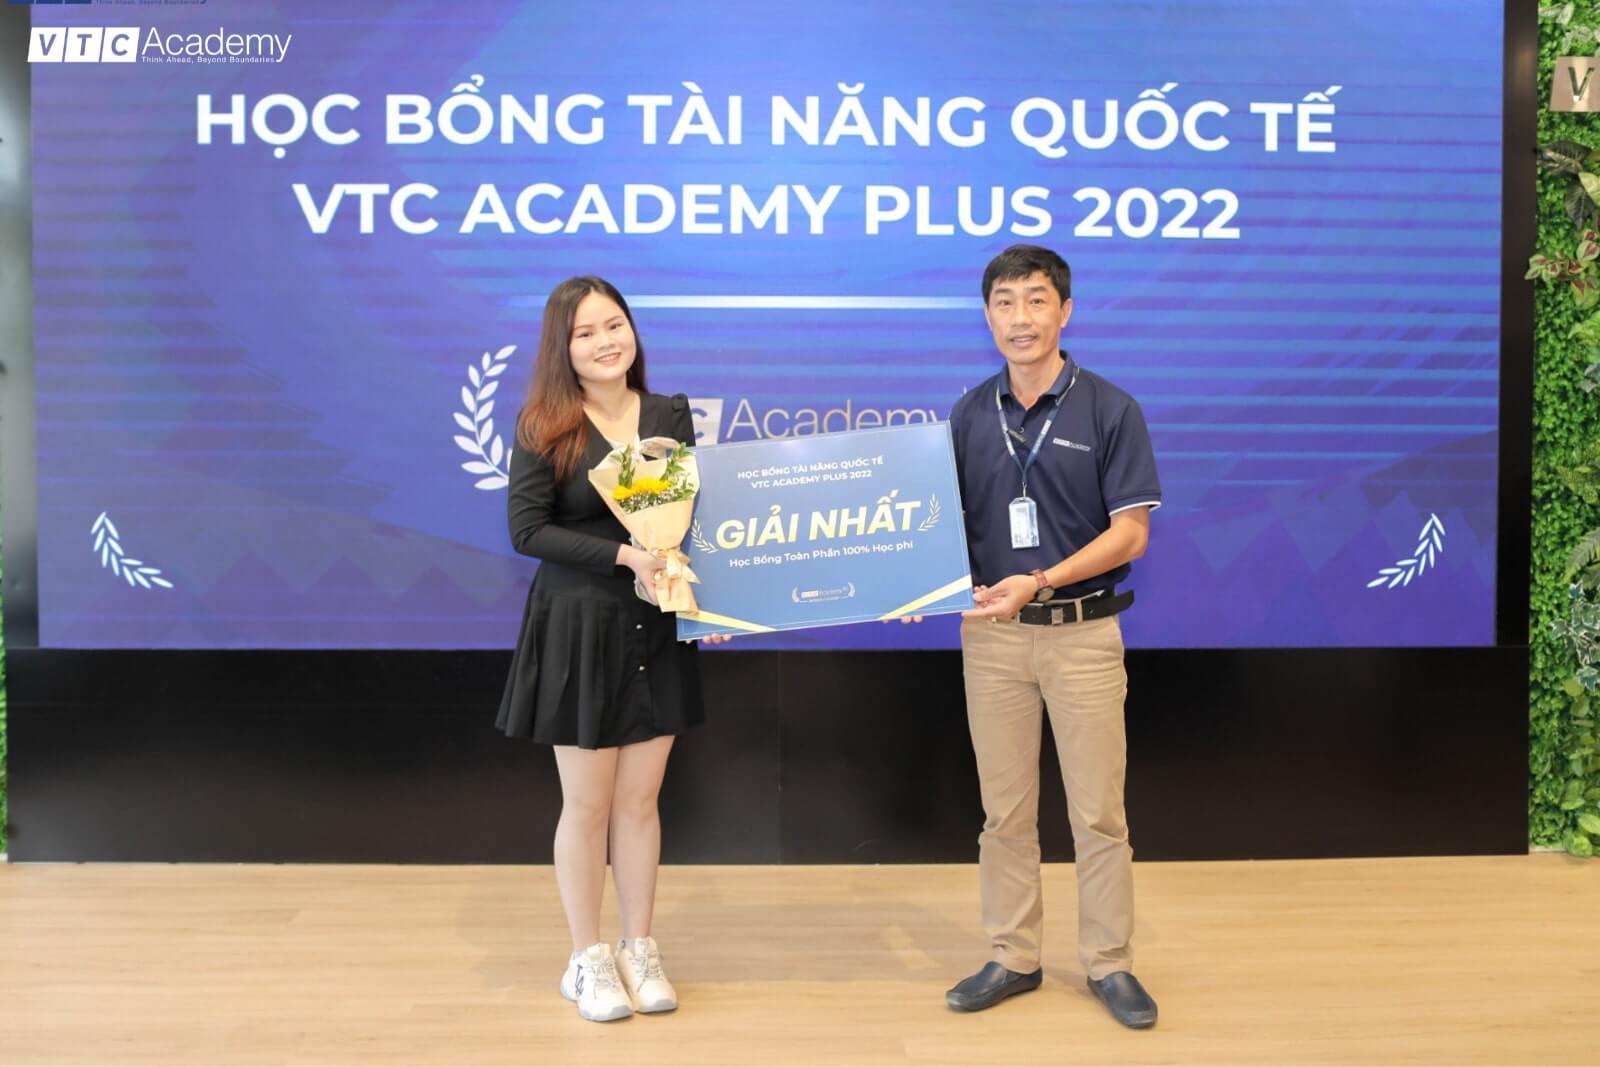 Học bổng tài năng VTC Academy: Biến đam mê thành sự nghiệp